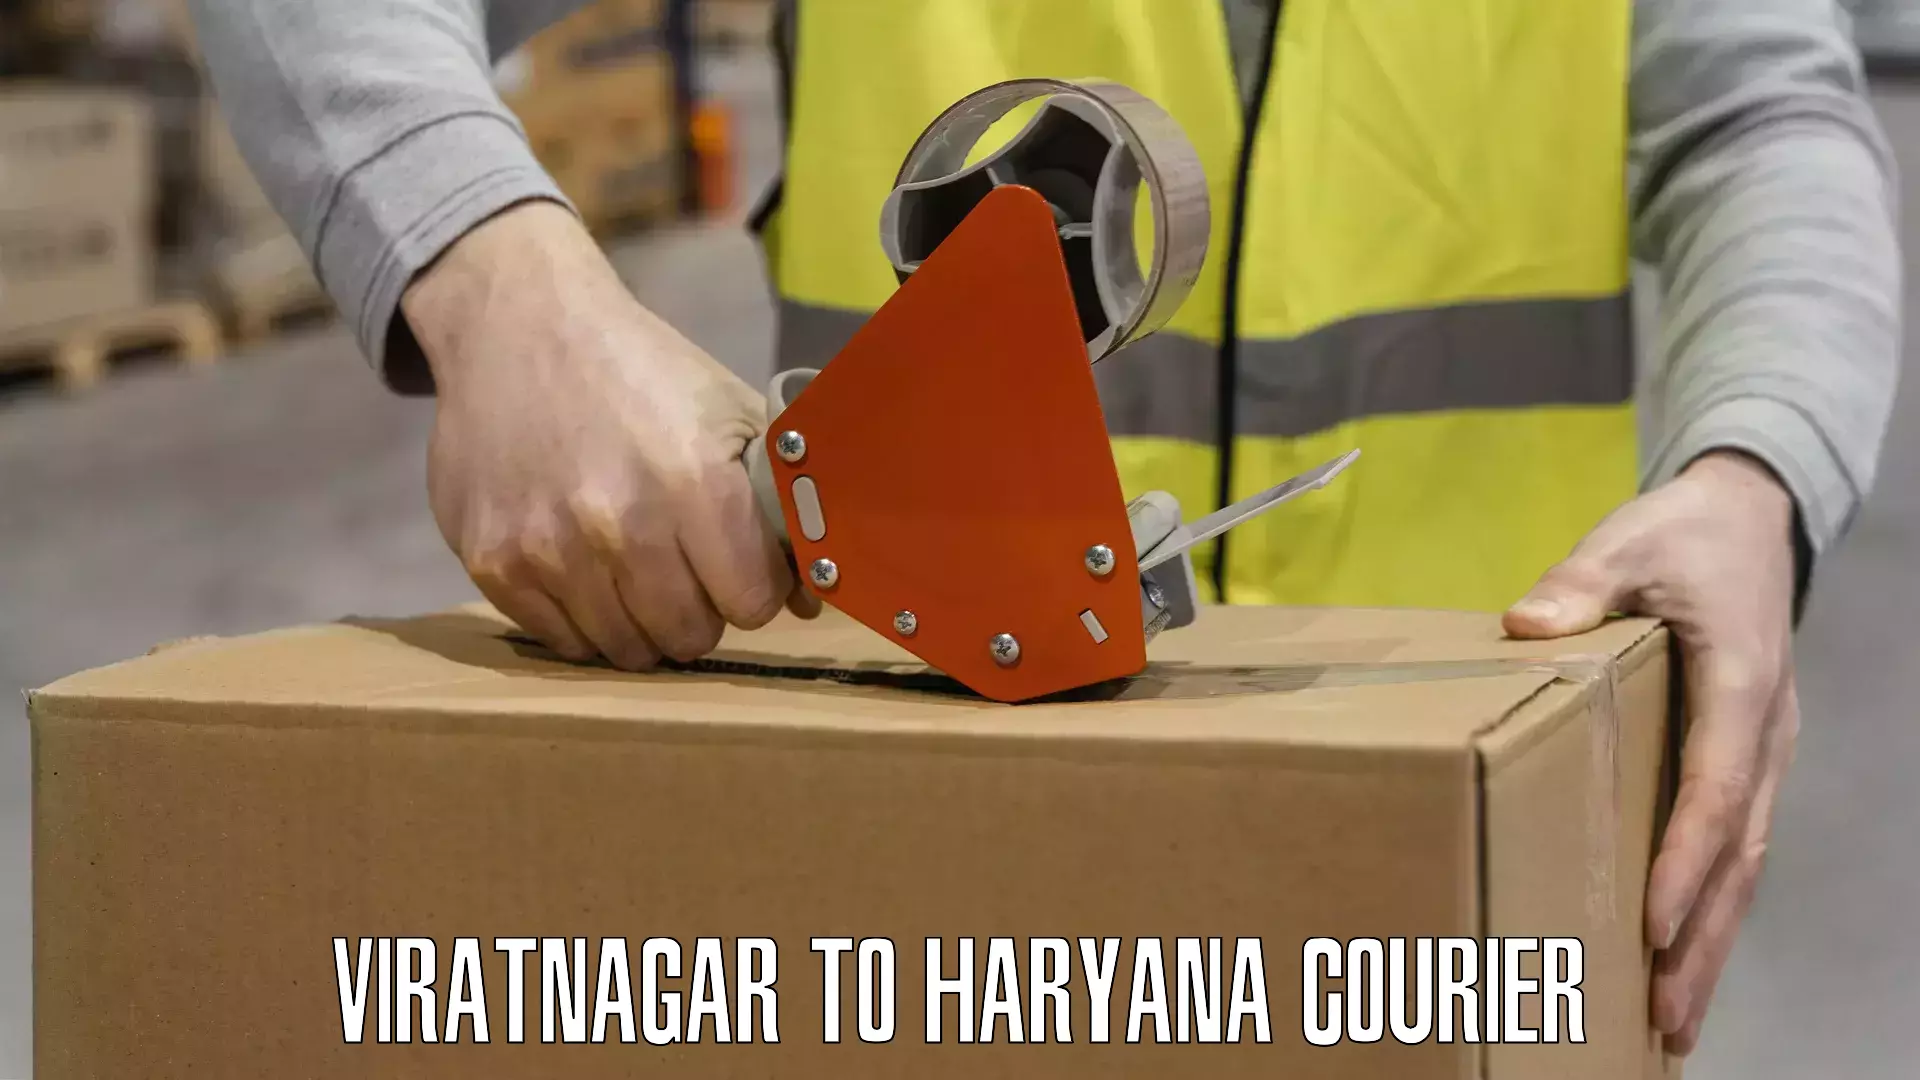 Efficient parcel delivery Viratnagar to IIIT Sonepat